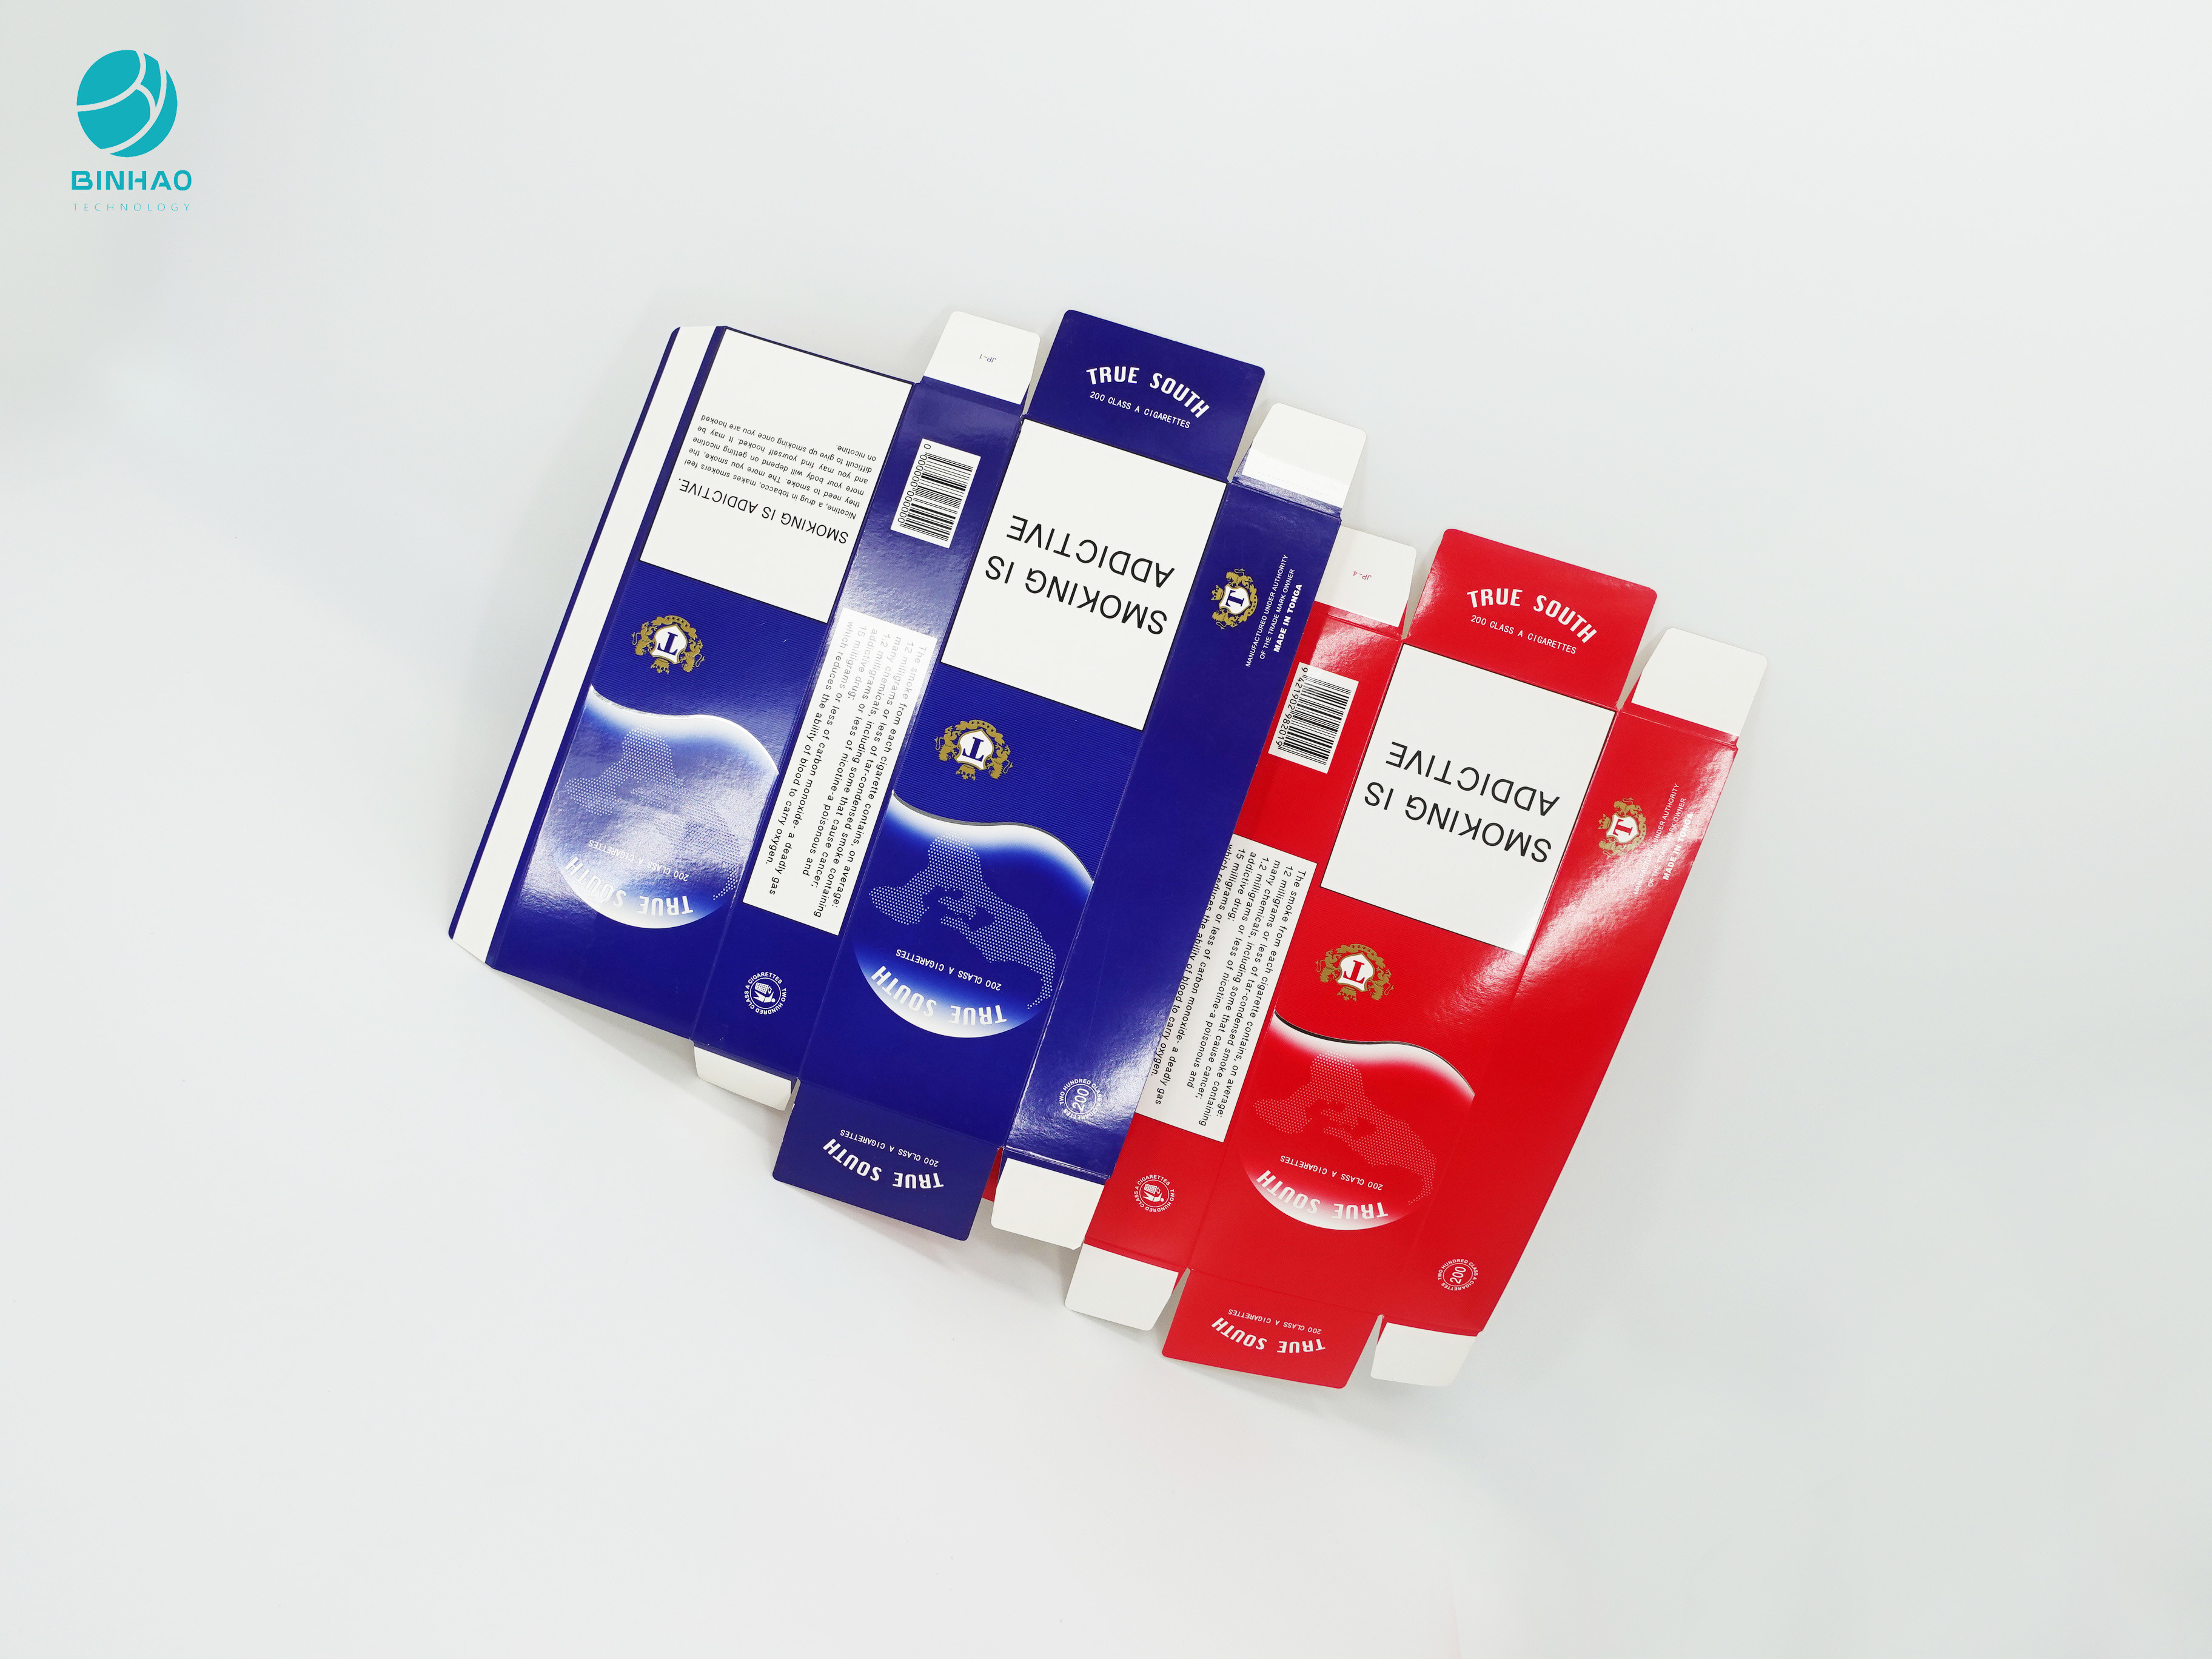 सिगरेट पैकेज के लिए ब्लू रेड सीरीज डिज़ाइन डिस्पोजेबल टिकाऊ कार्डबोर्ड केस